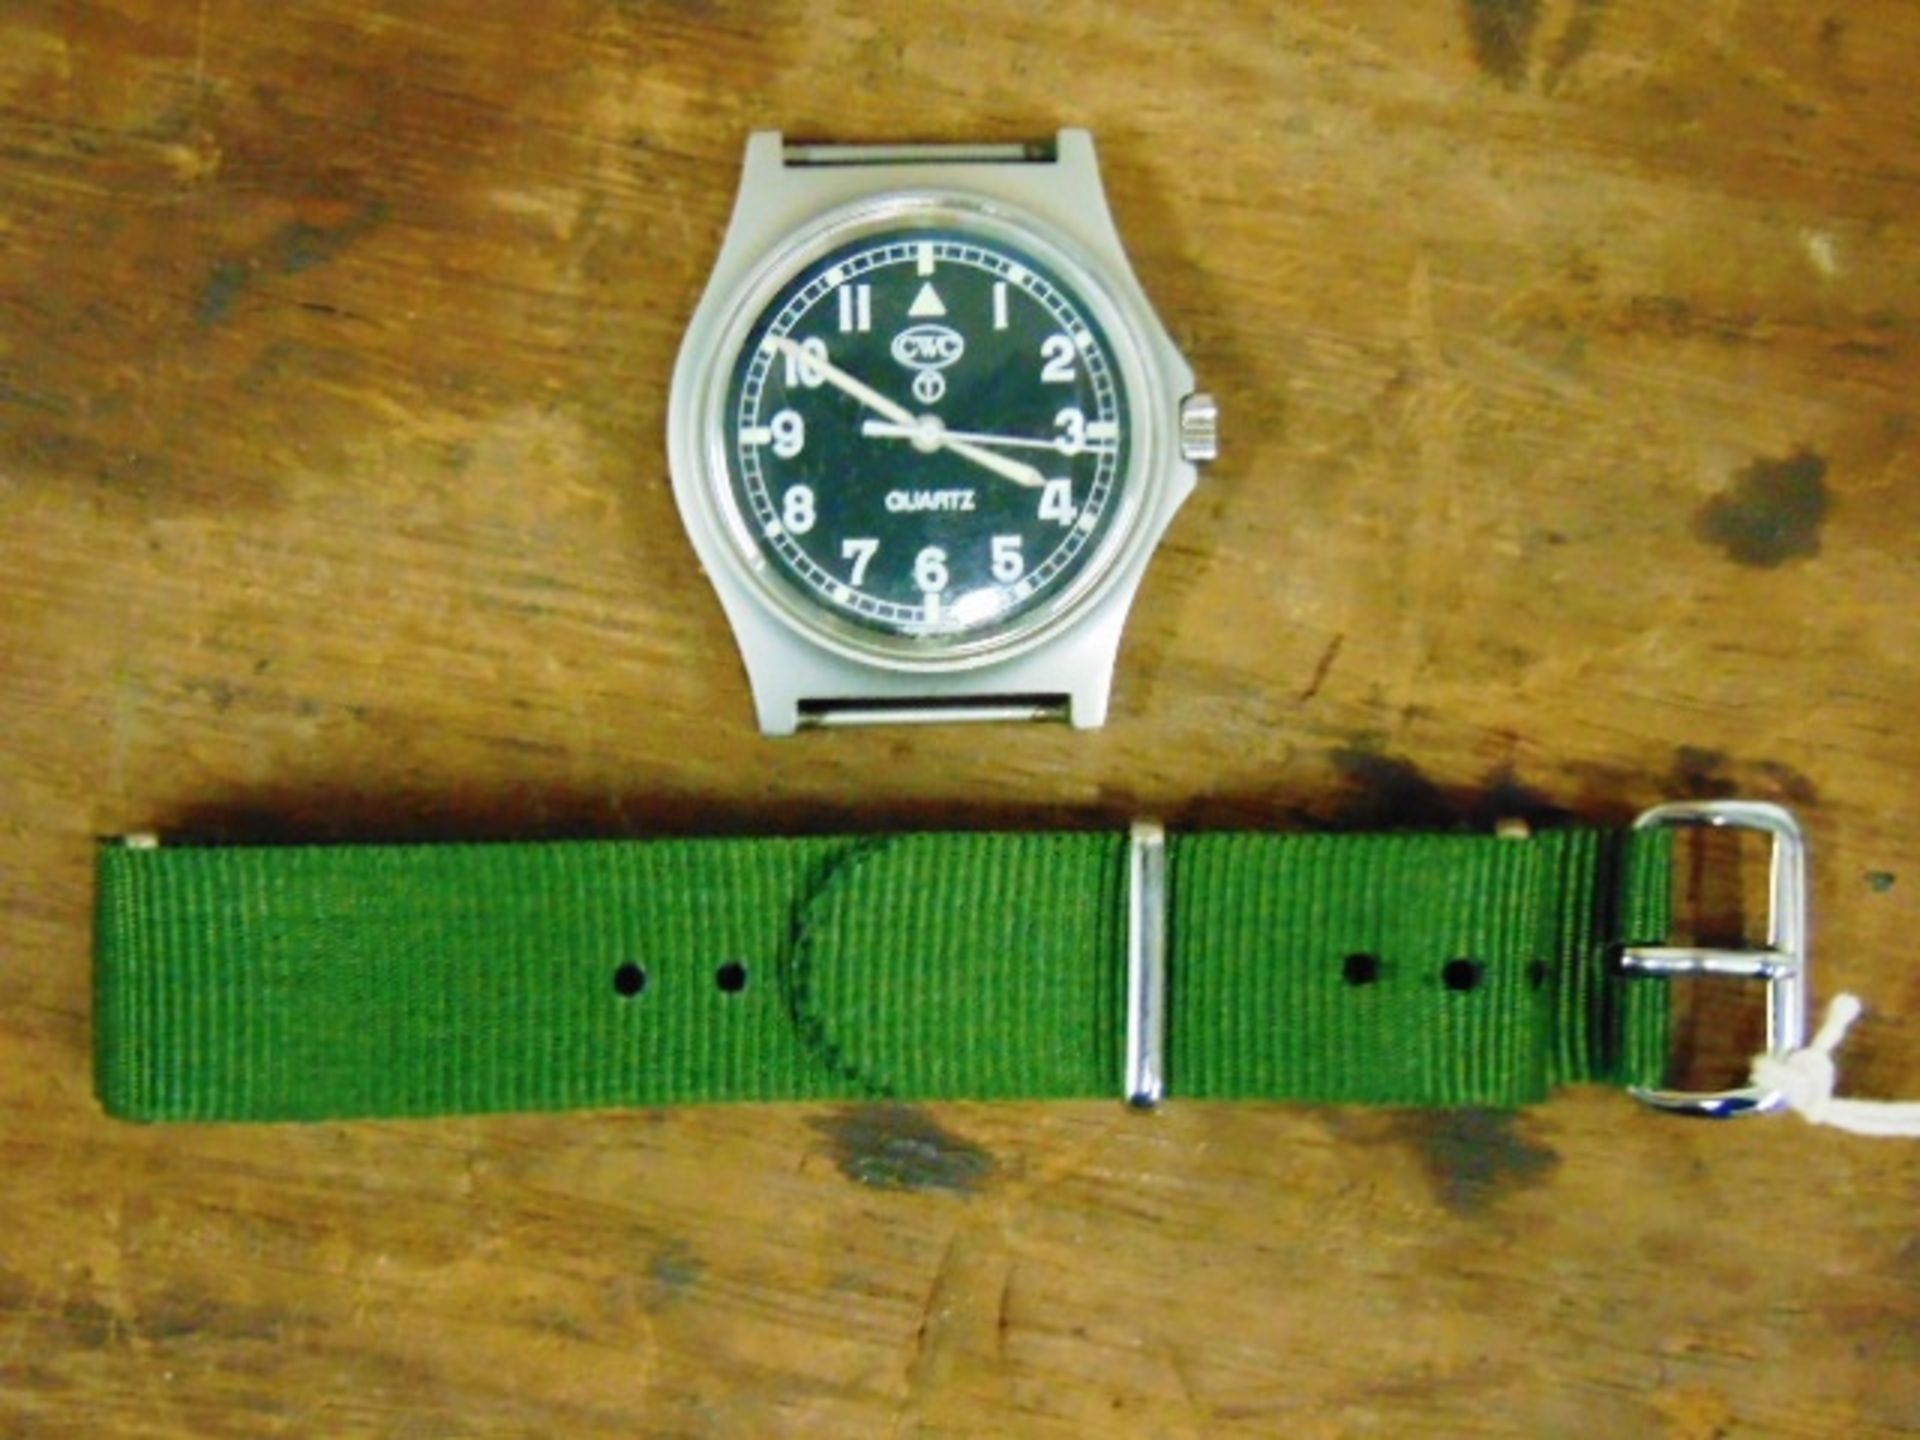 Unissued Genuine, Navy issue 0552, CWC quartz wrist watch - Image 4 of 6